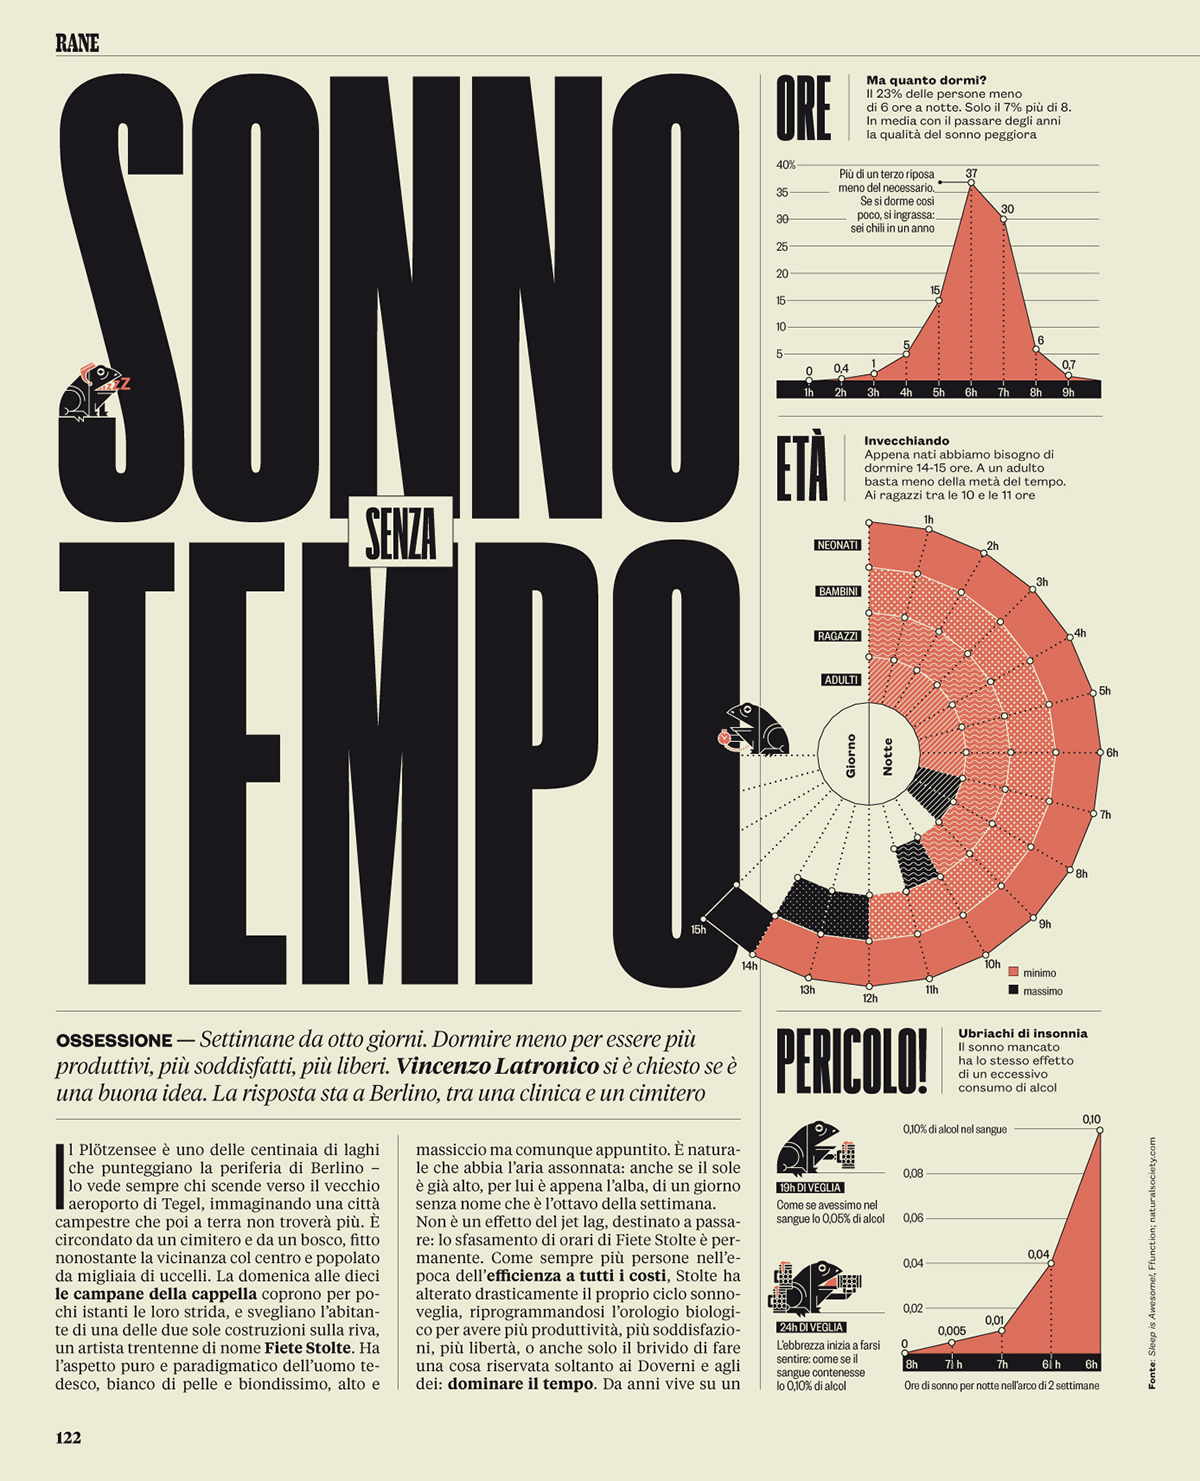 Il  IL magazine rane  editorial design  Magazine Design  infographic david foster wallace  ilsole24ore